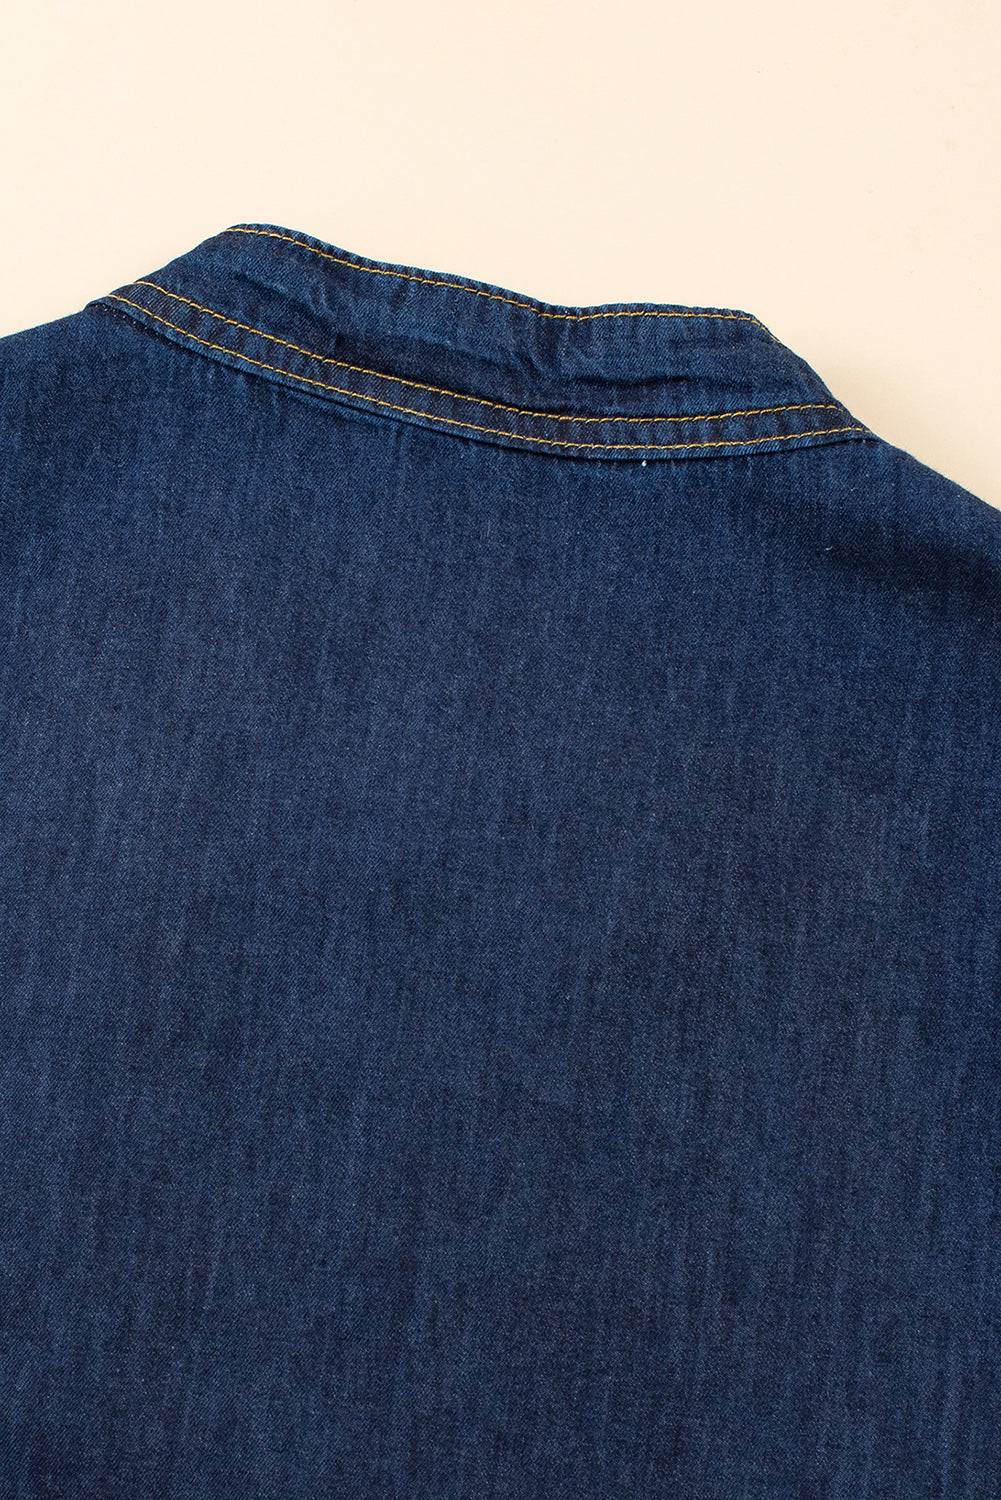 a close up of a blue jean shirt